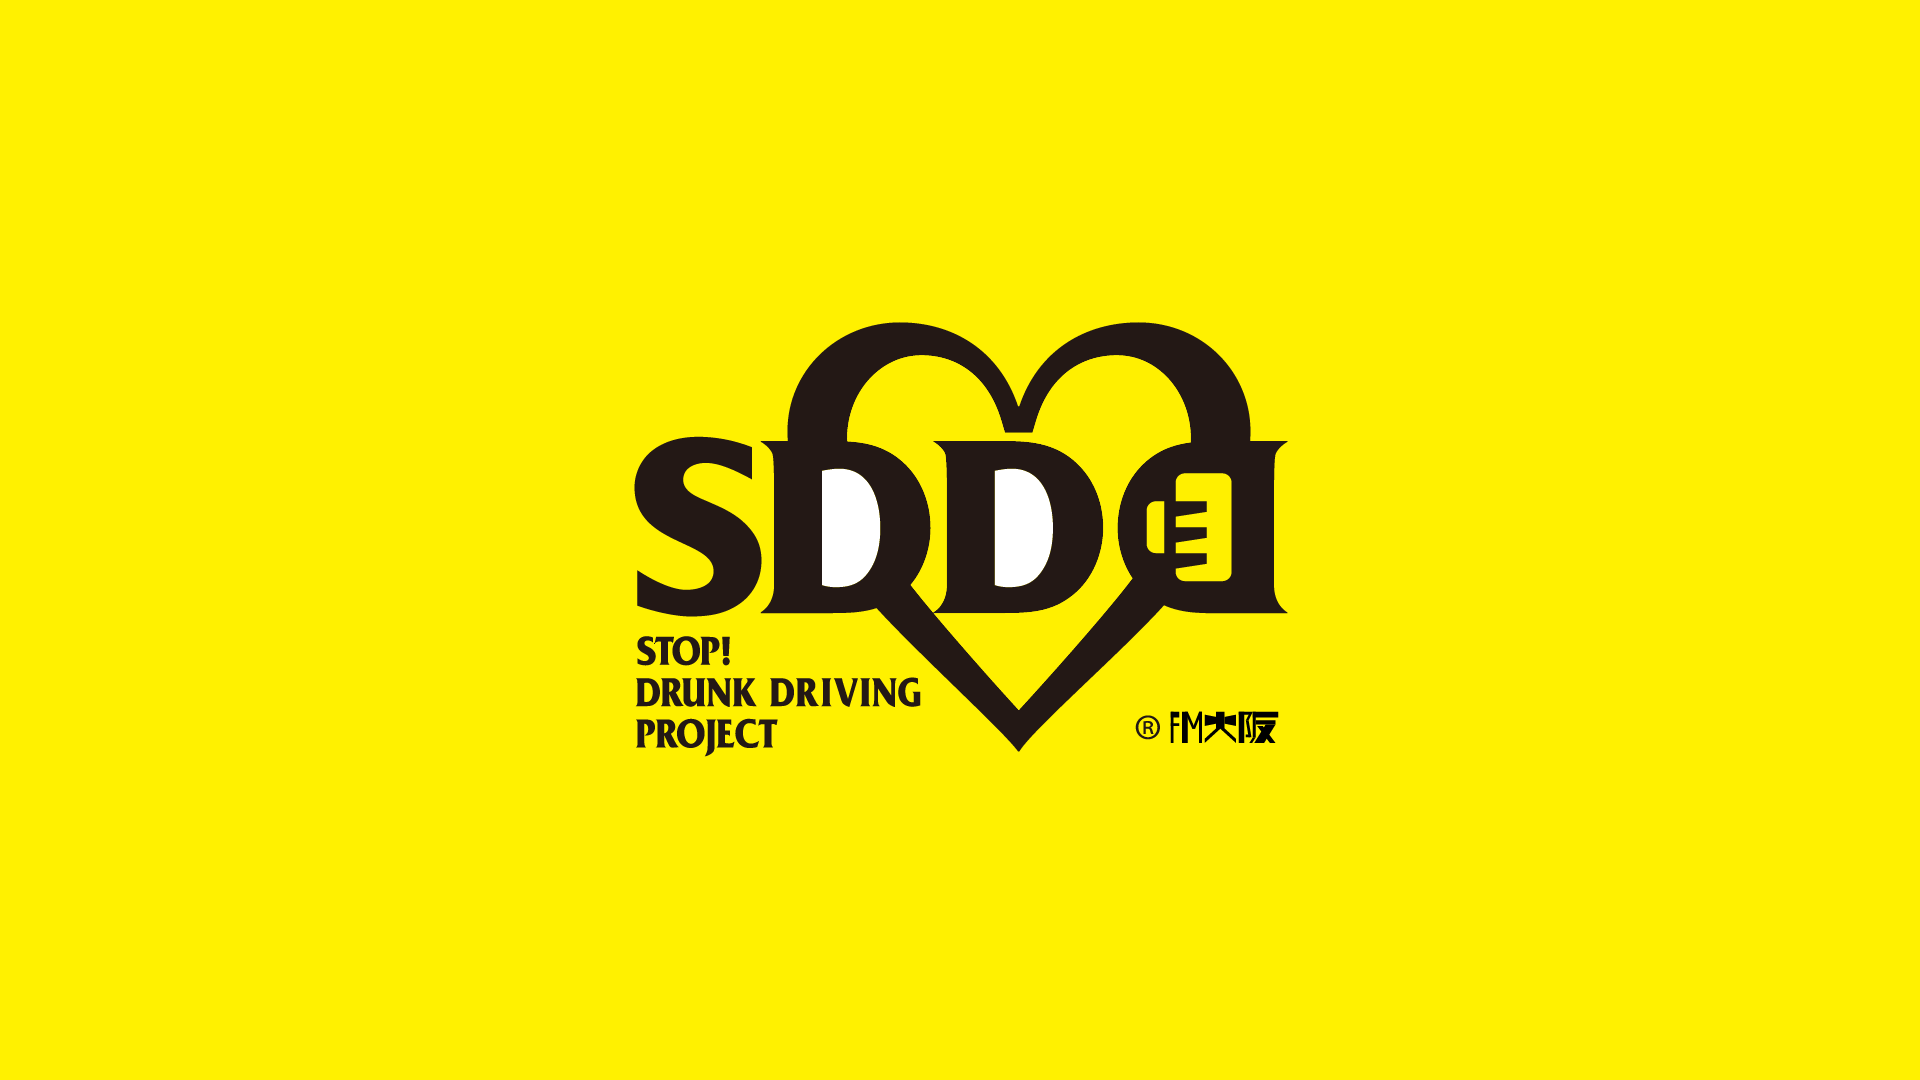 あなたができること Sdd Stop Drunk Driving Project 飲酒運転防止プロジェクト